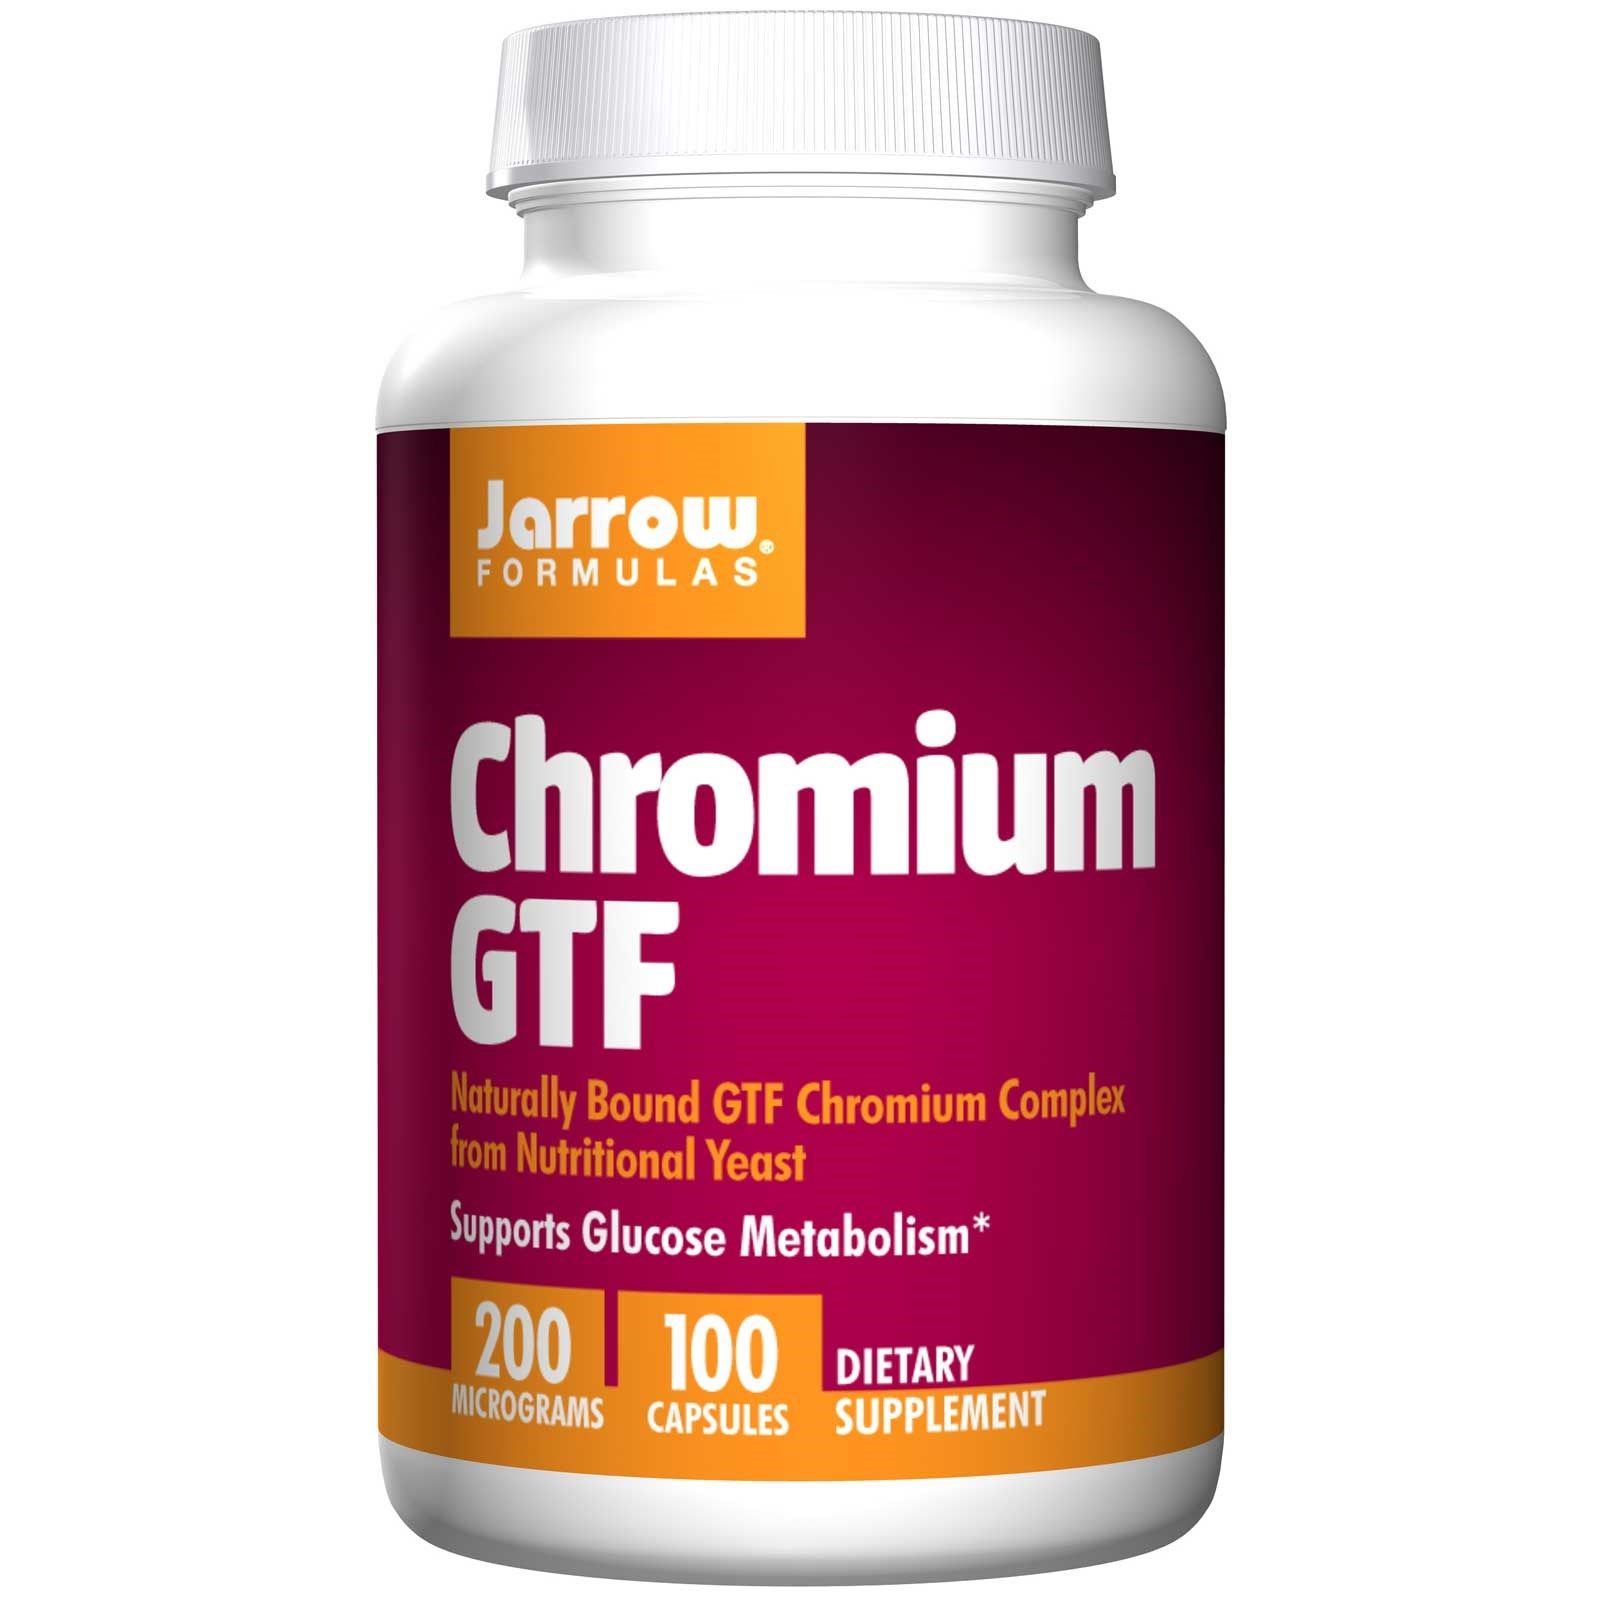 Chromium GTF viên uống hỗ trợ bệnh tiểu đường